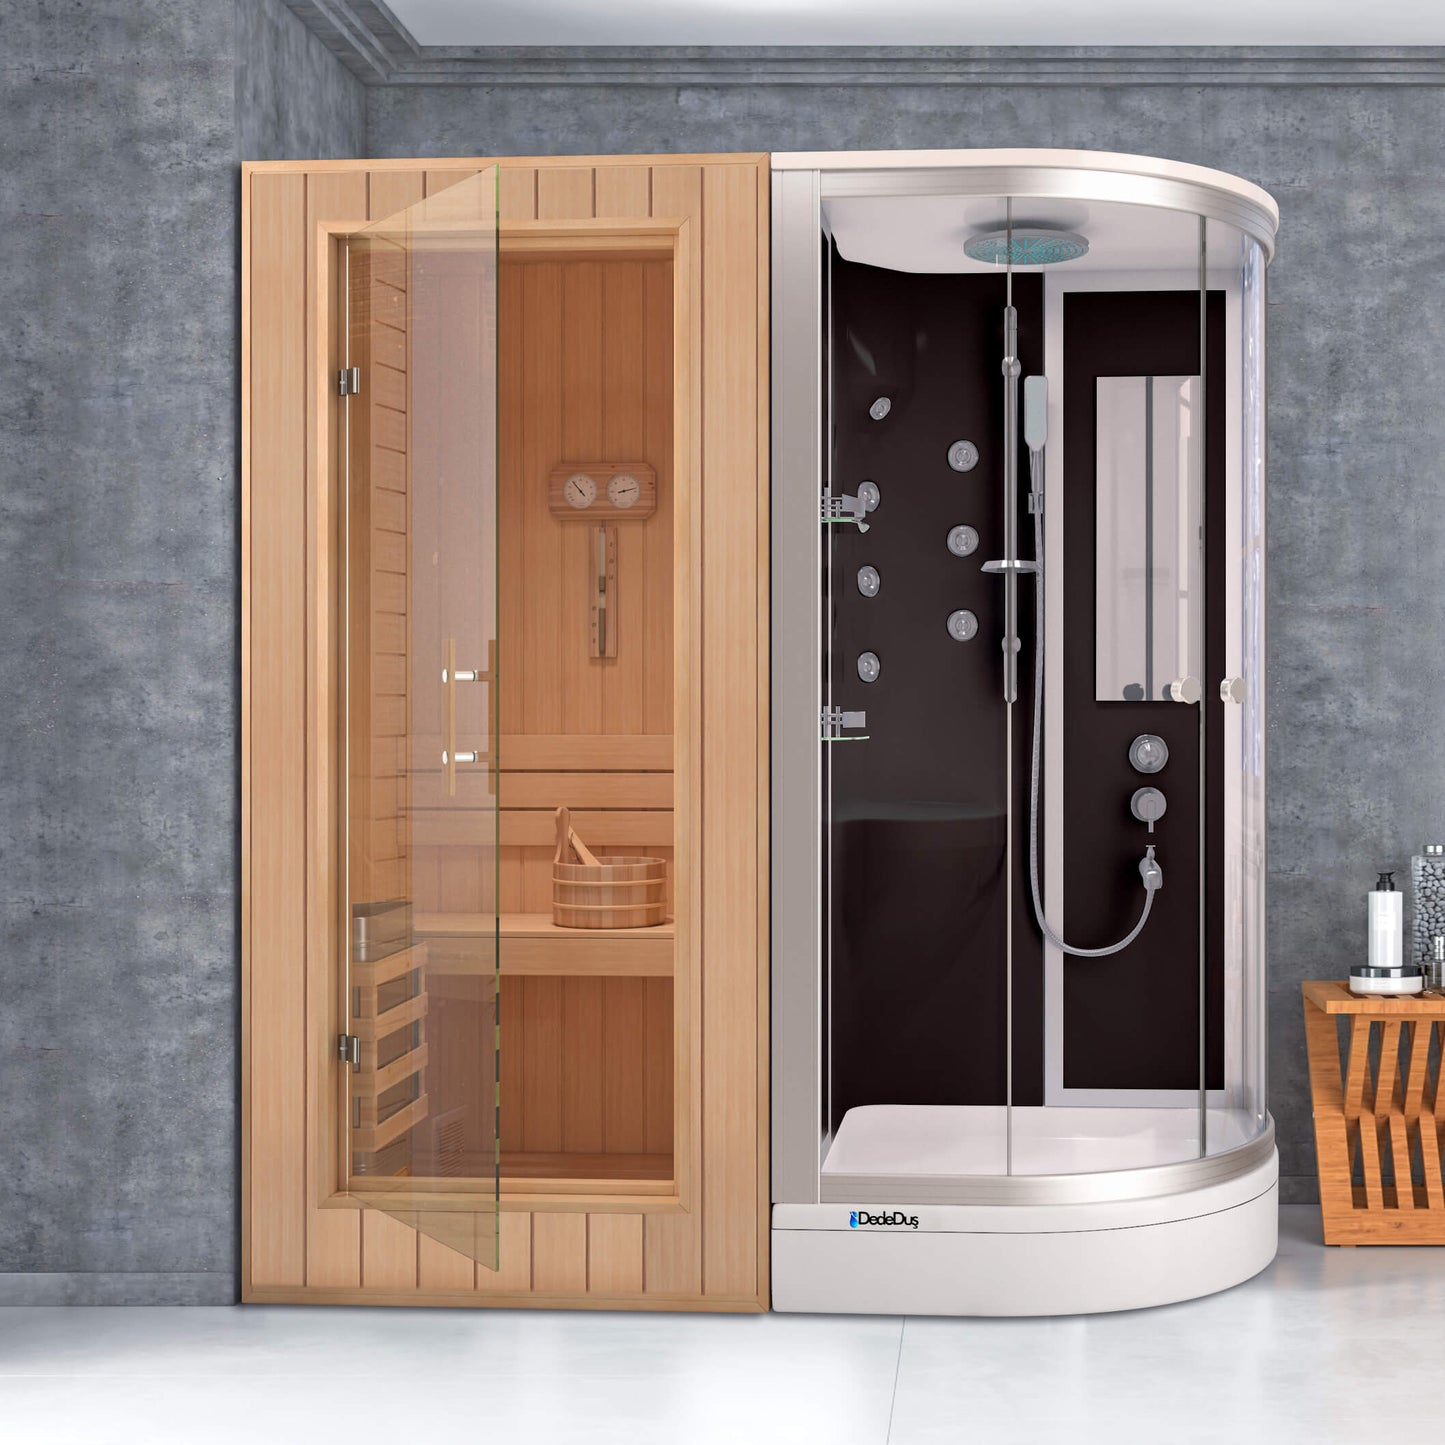 Siyah-beyaz asimetrik duş tekneli, kompakt duşakabinli. ev tipi sauna, Dede Duş, Çengelköy, Erenköy, Bakırköy